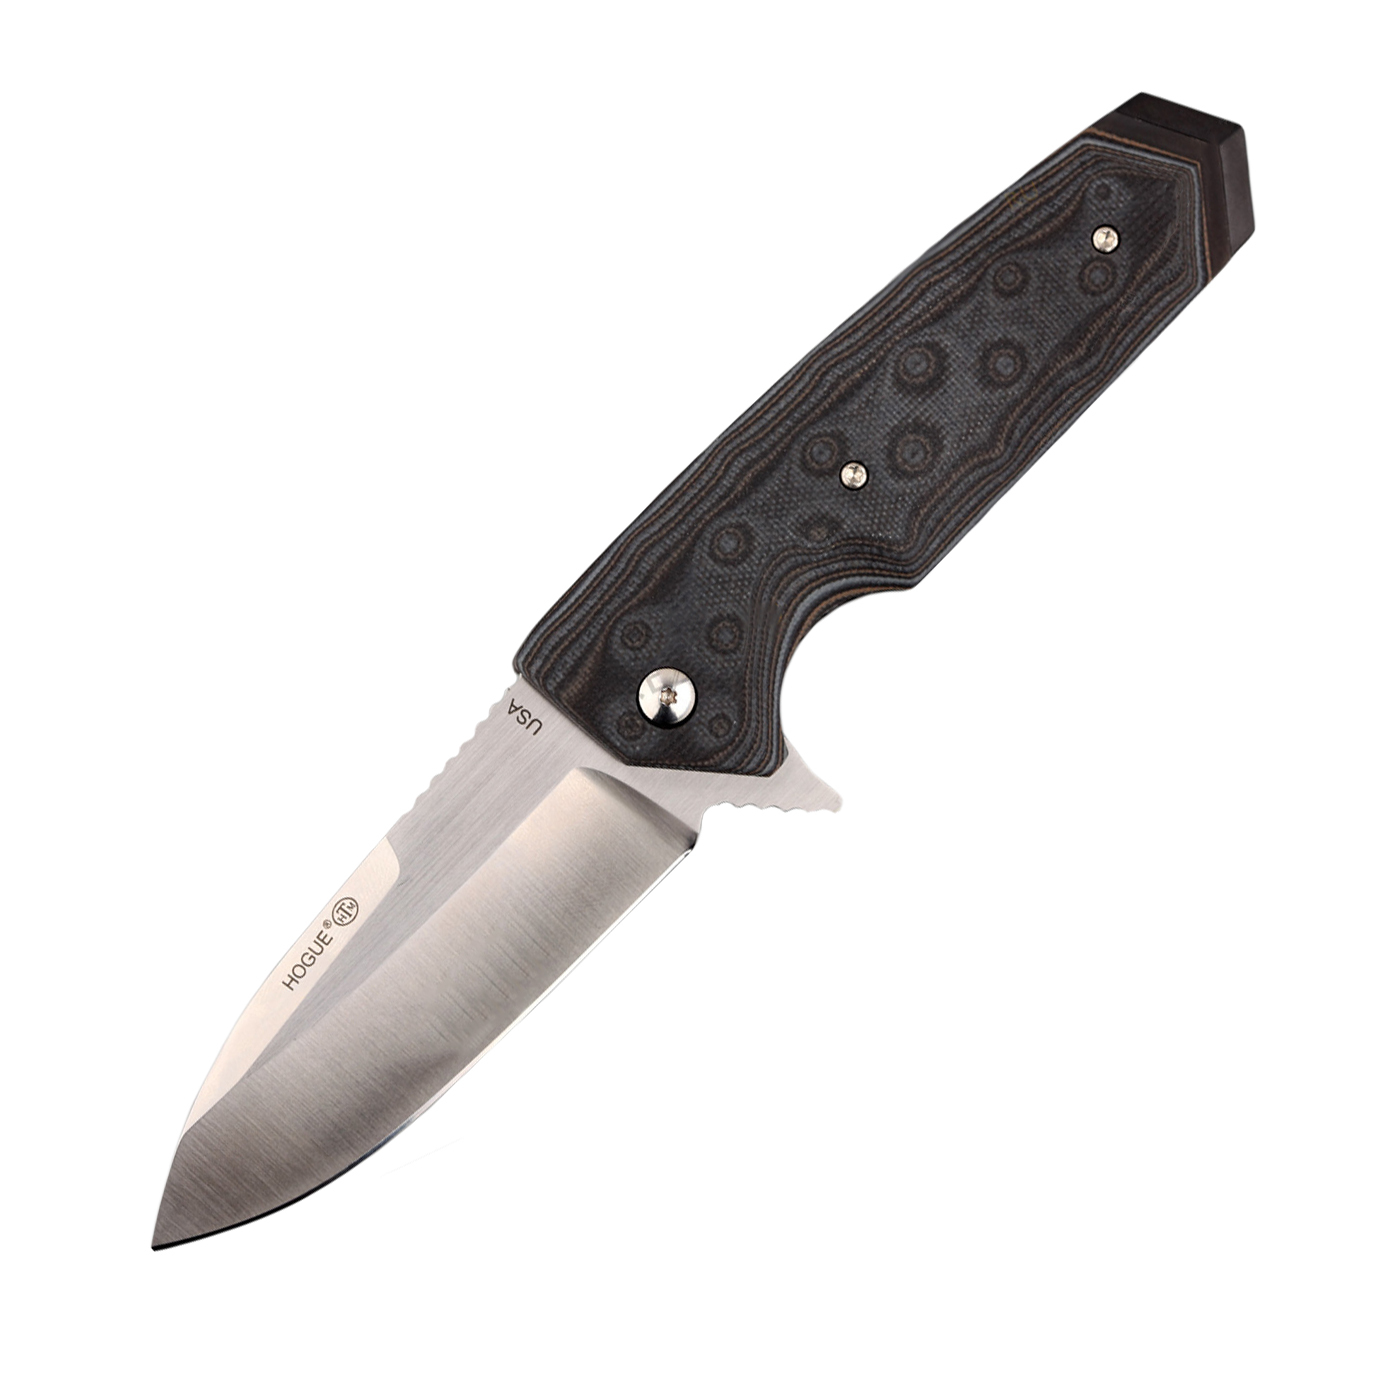 Нож складной Hogue EX-02, сталь 154CM Satin finish, рукоять стеклотекстолит G-Mascus®, темно-серый